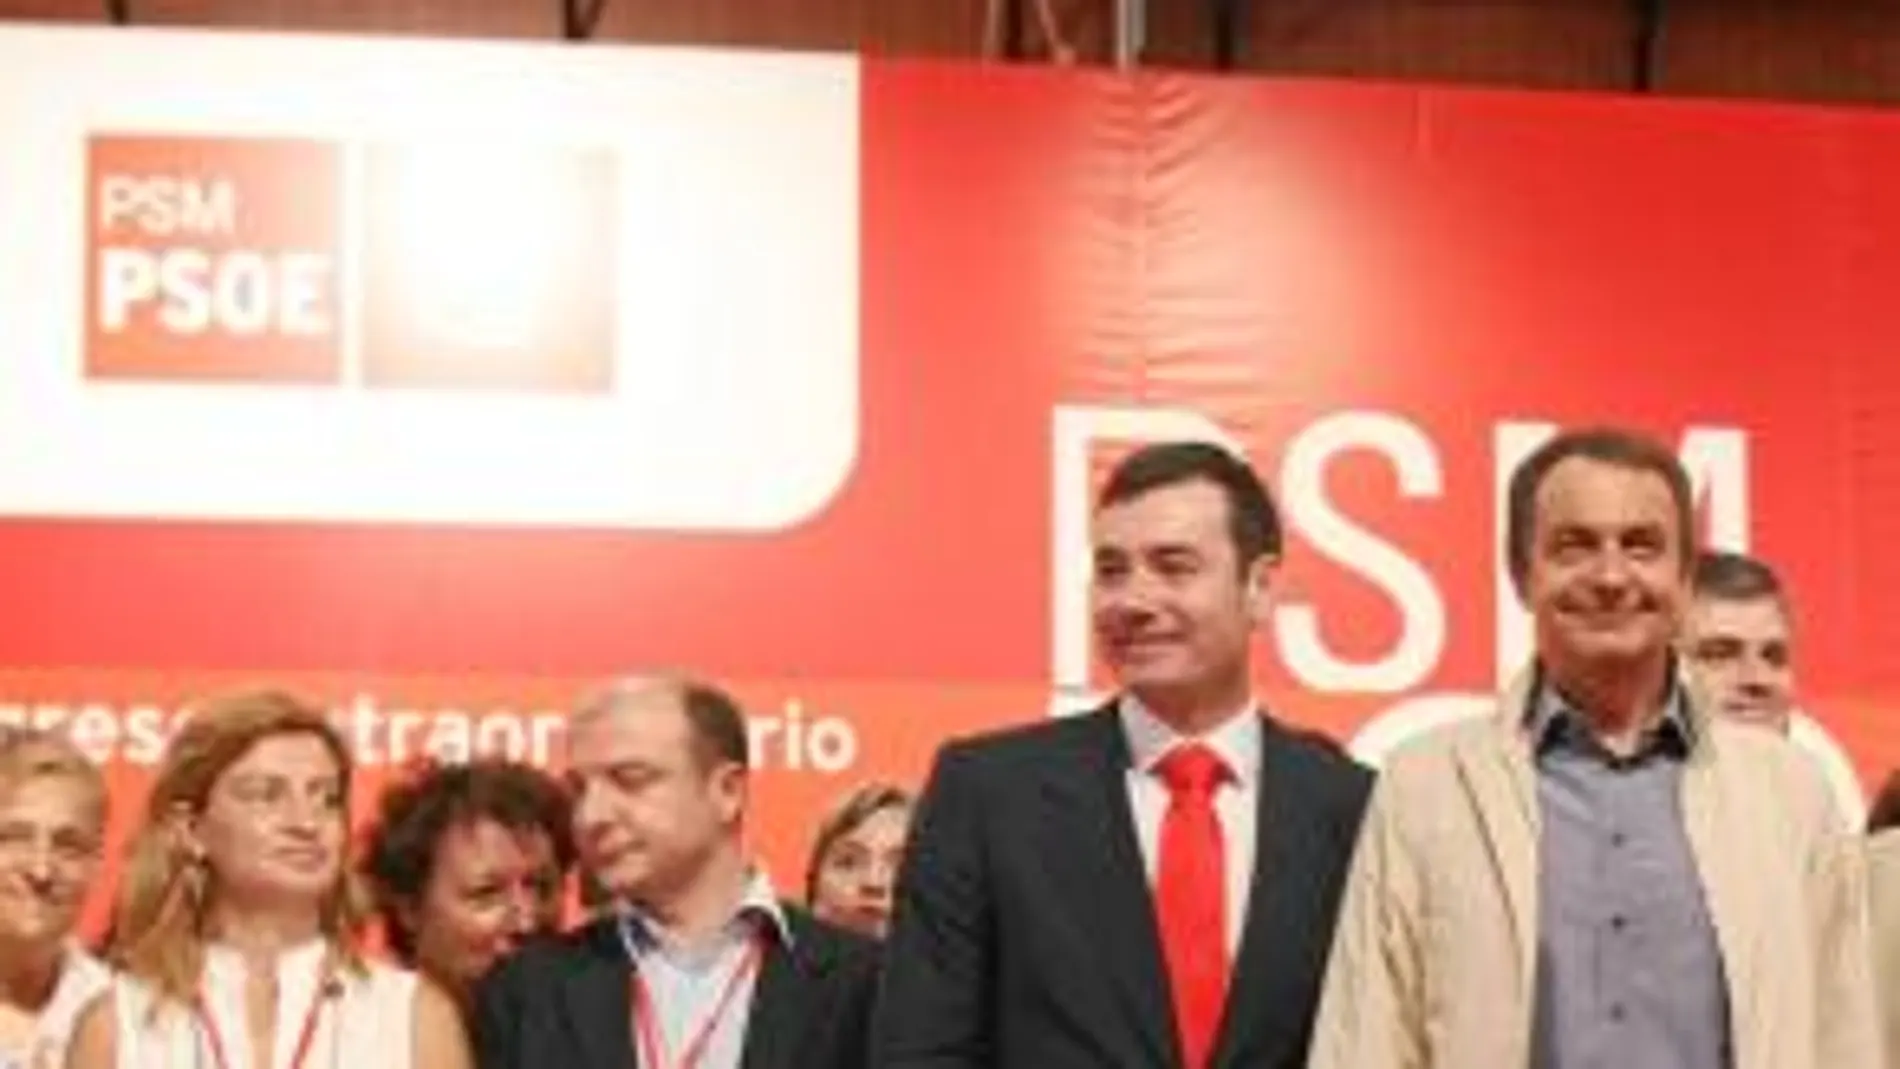 2008. Trinidad Rollán es secretaria de Organización del PSM desde septiembre de 2008. Este año formó parte de la lista del PSOE al Congreso.